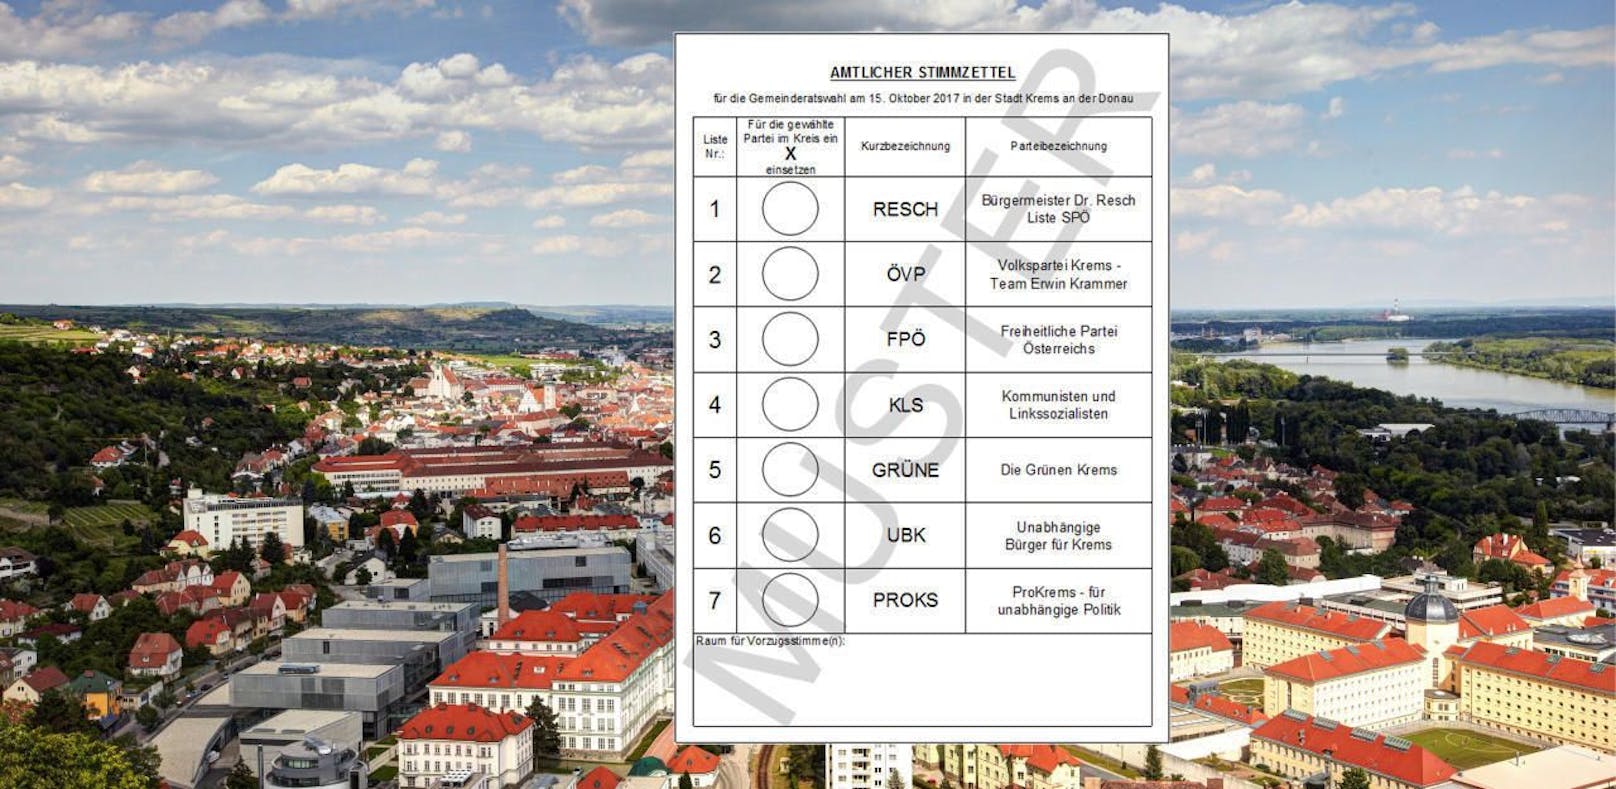 In Krems wird am 15. Oktober zweimal gewählt: National- und Gemeinderatswahl!